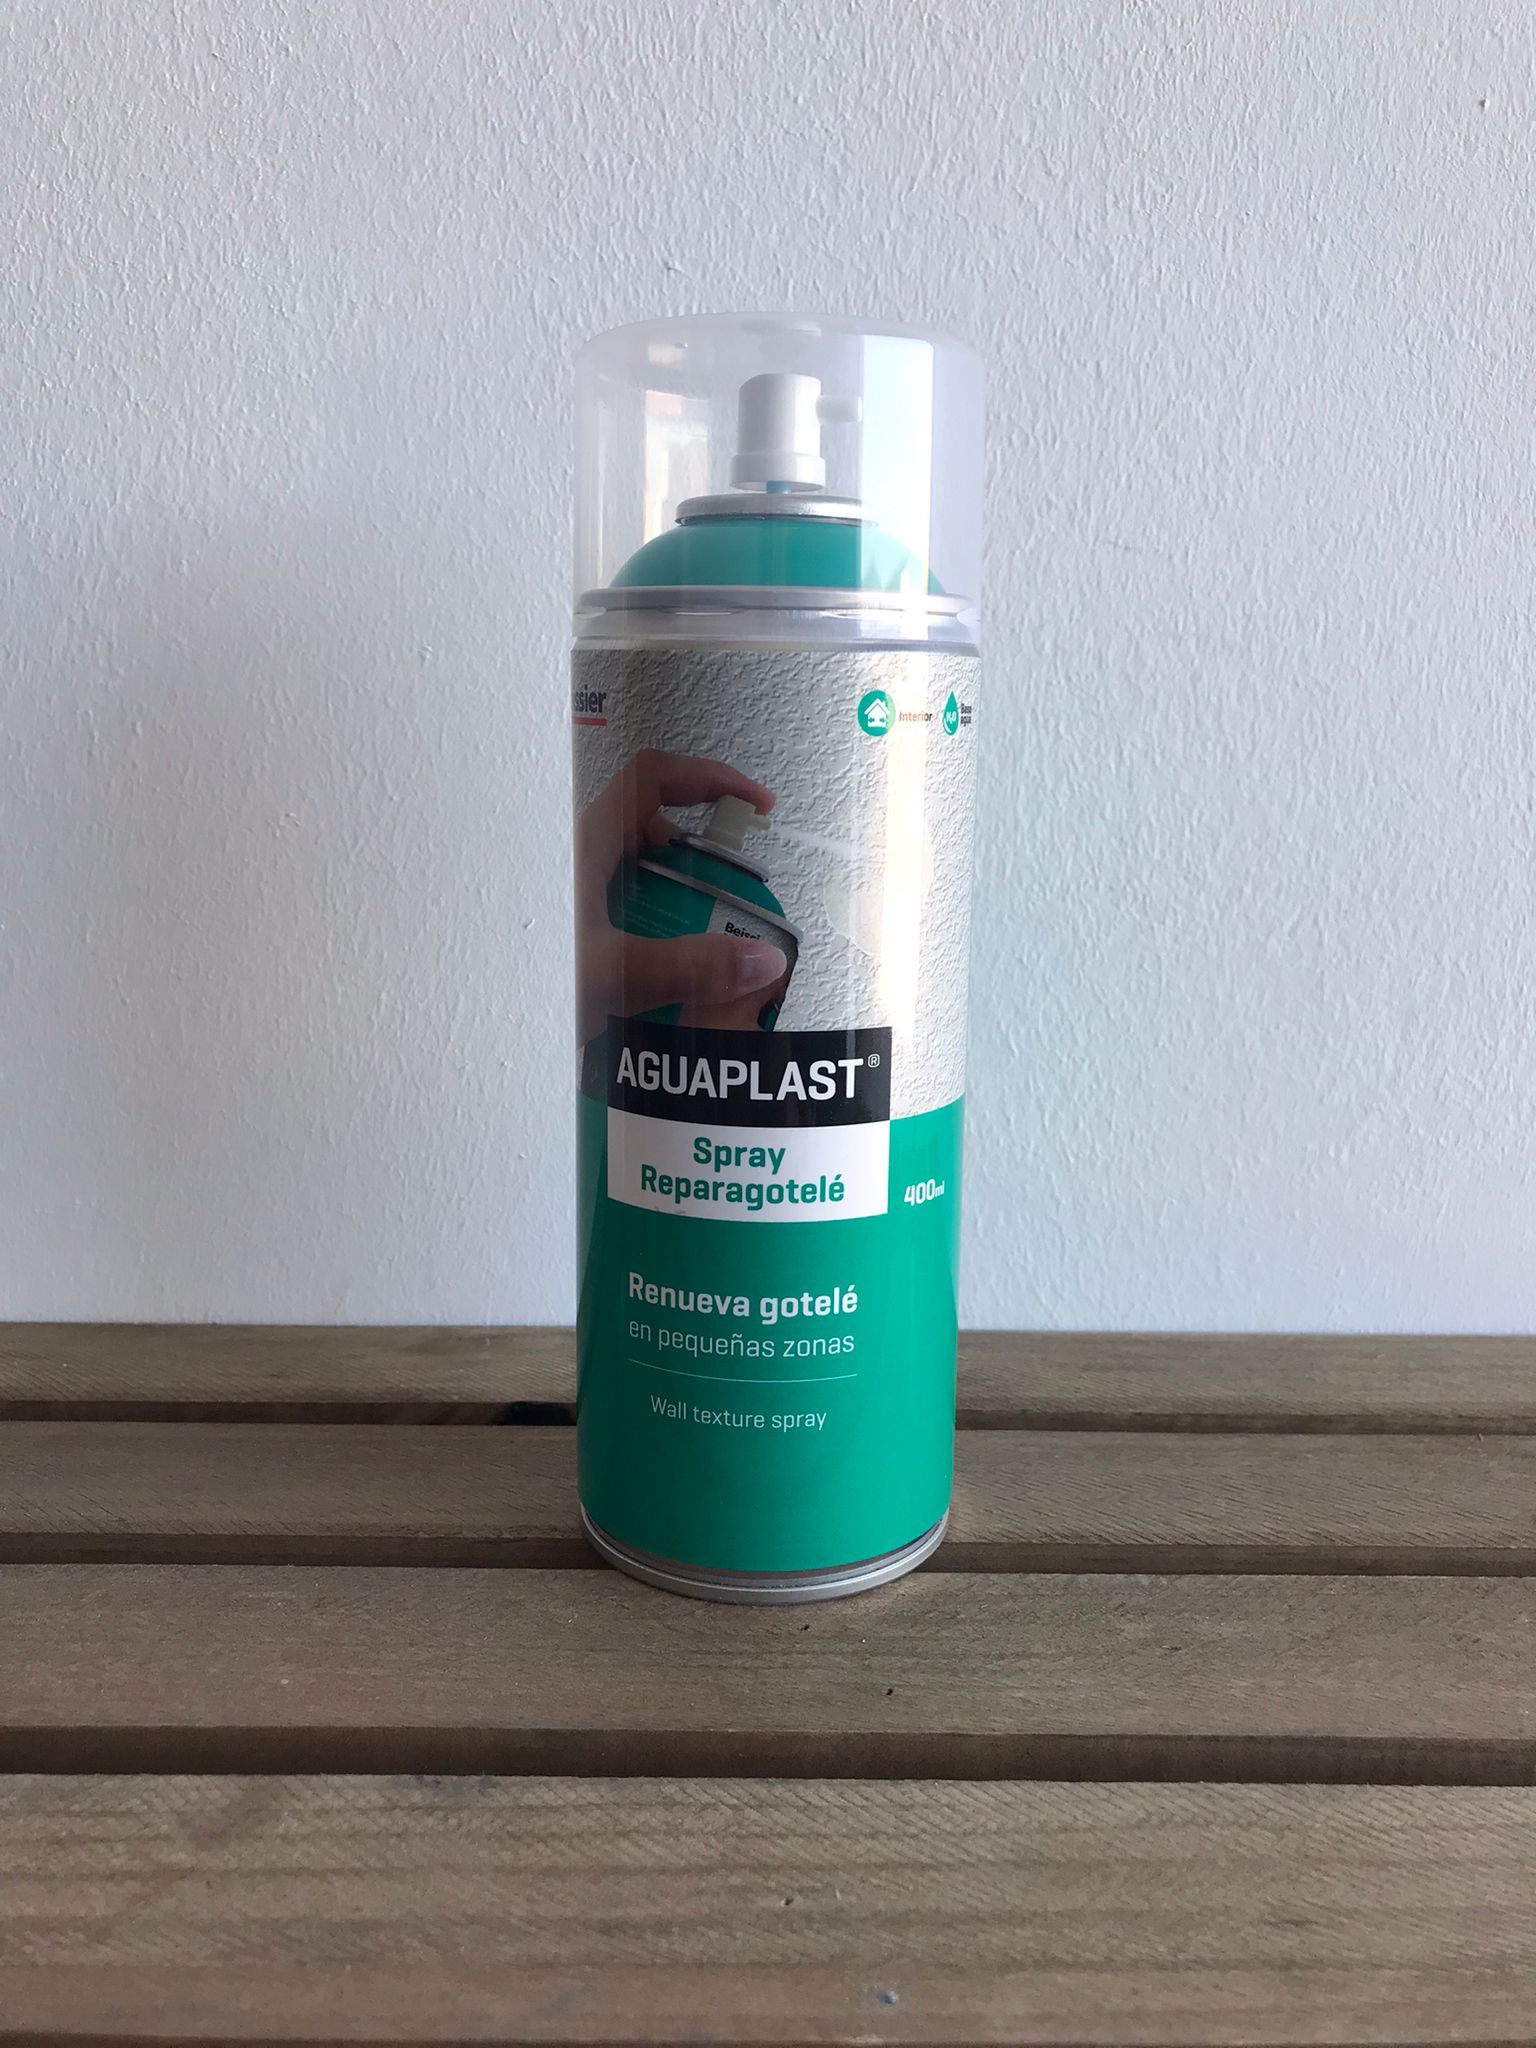 Aguaplast Spray Reparagotelé (400 ml)